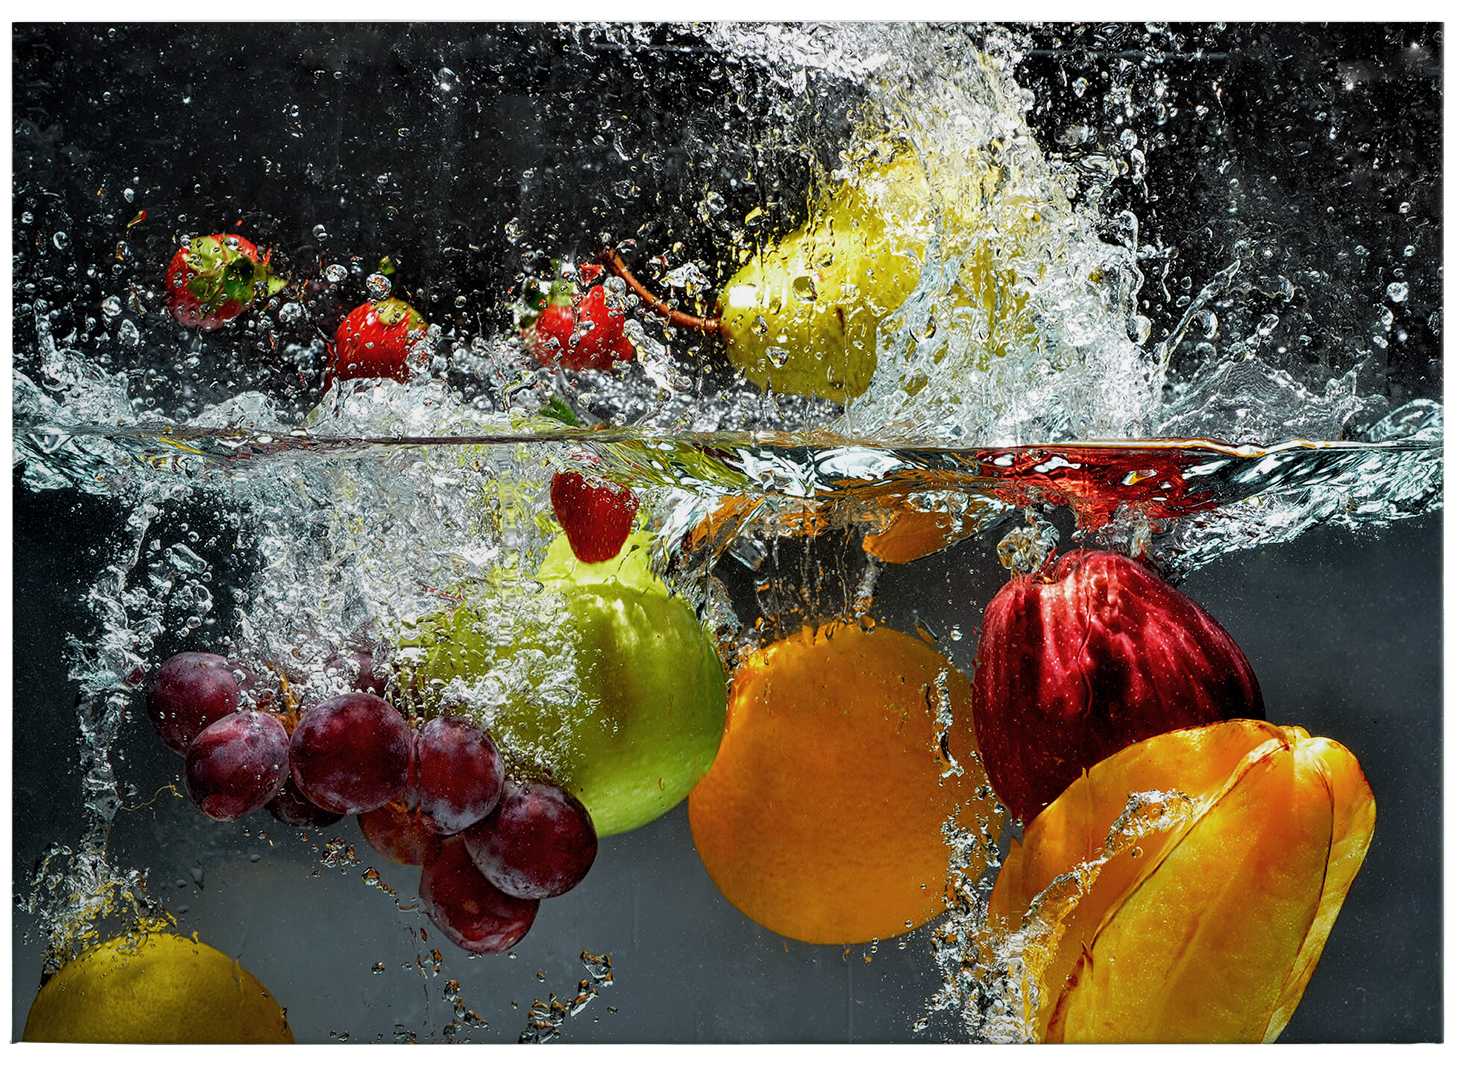             Leinwandbild frisches Obst im Wasserbad – 0,70 m x 0,50 m
        